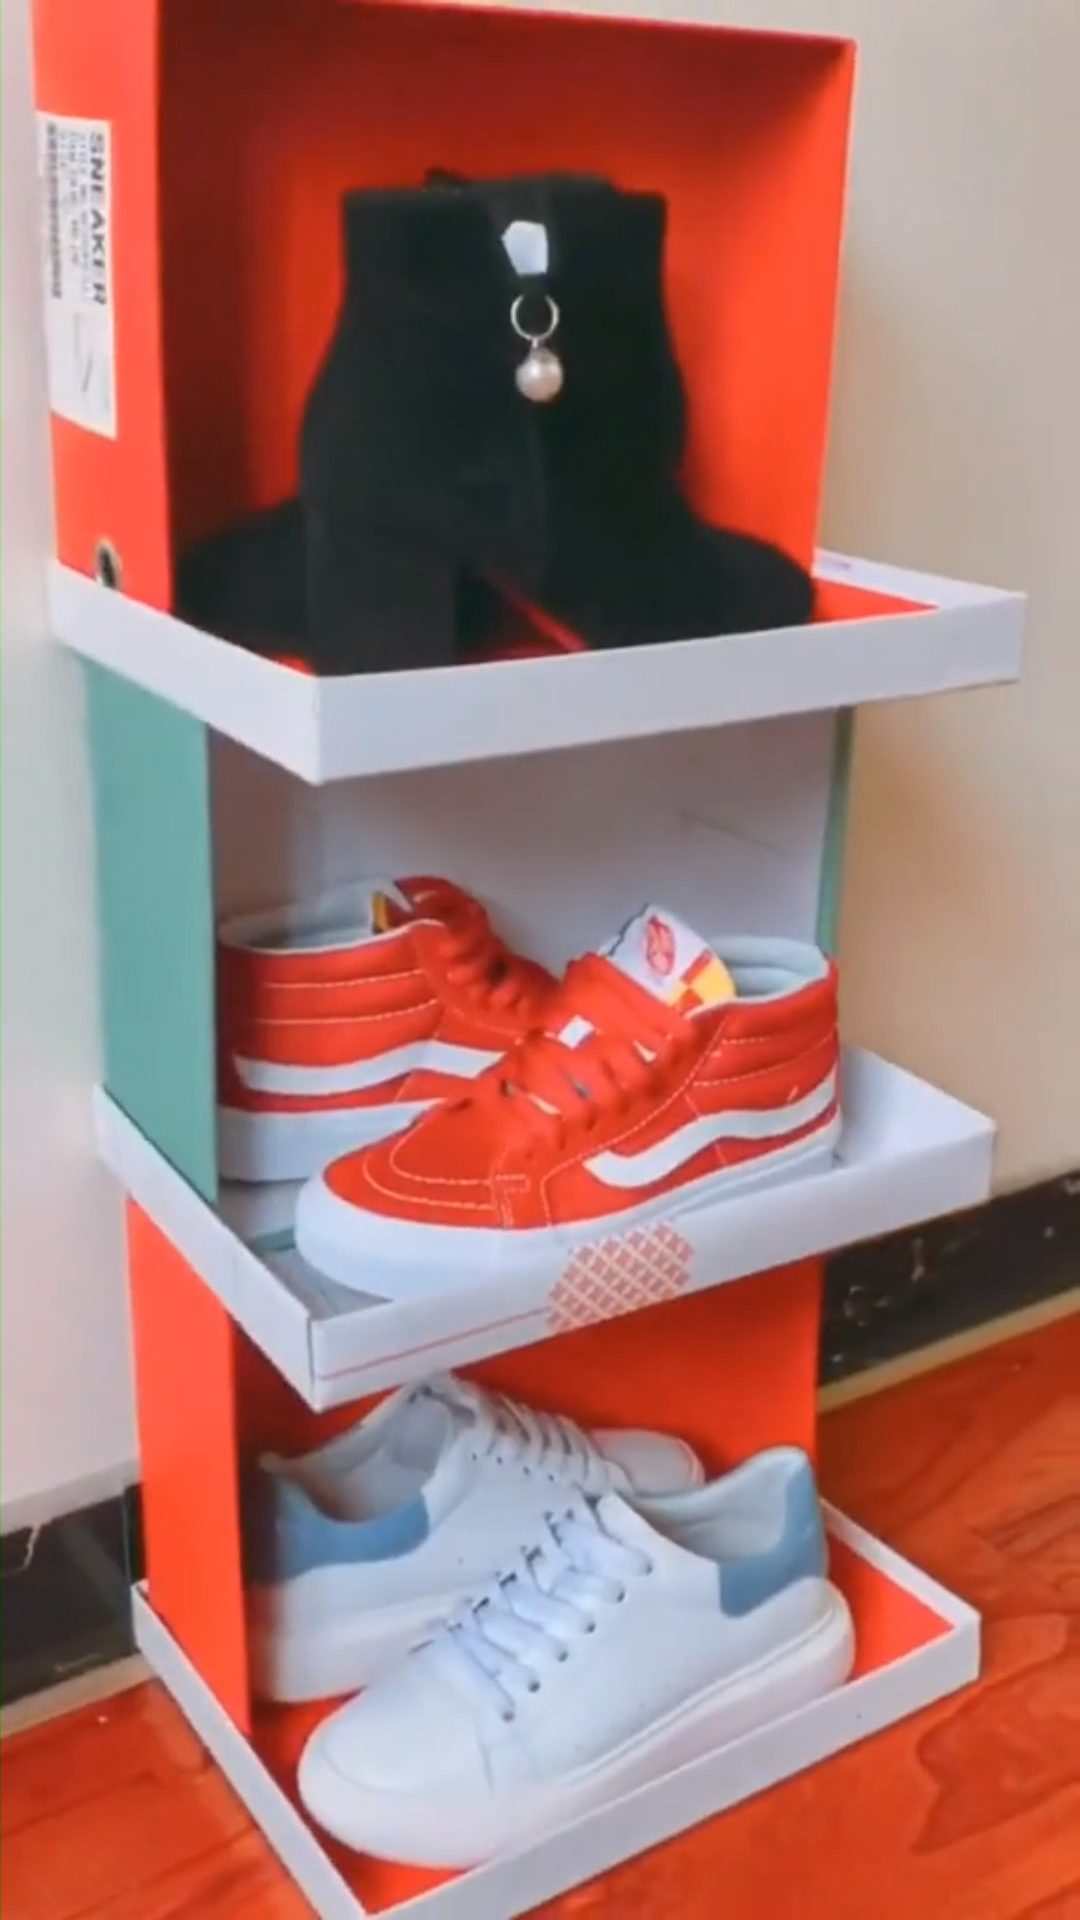 DIY Shoe Rack by Shoe Boxes - DIY Shoe Rack by Shoe Boxes -   19 diy Storage videos ideas